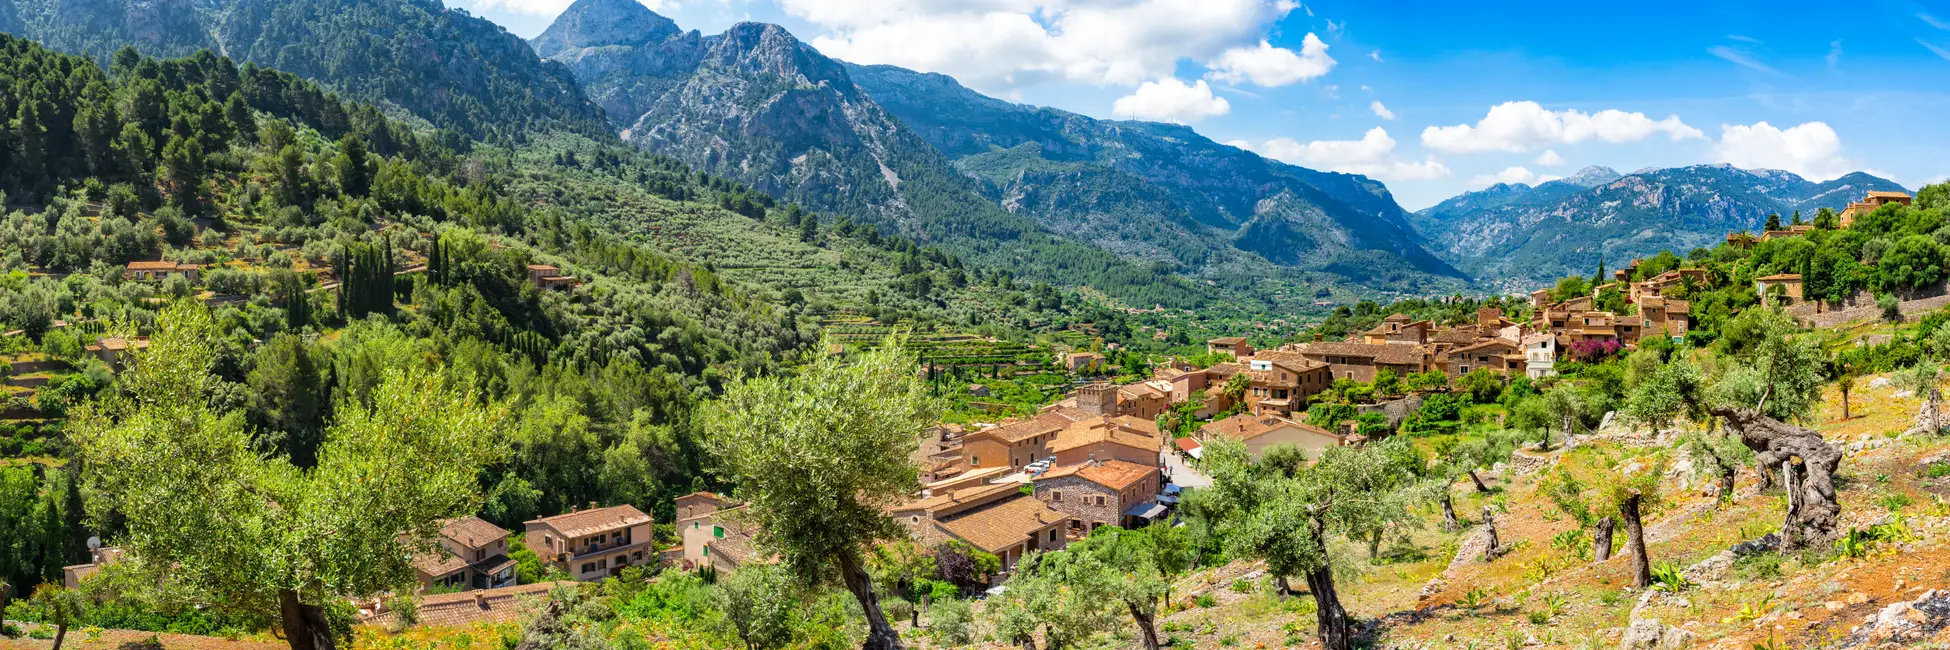 Le village de Fornalutx en Espagne 